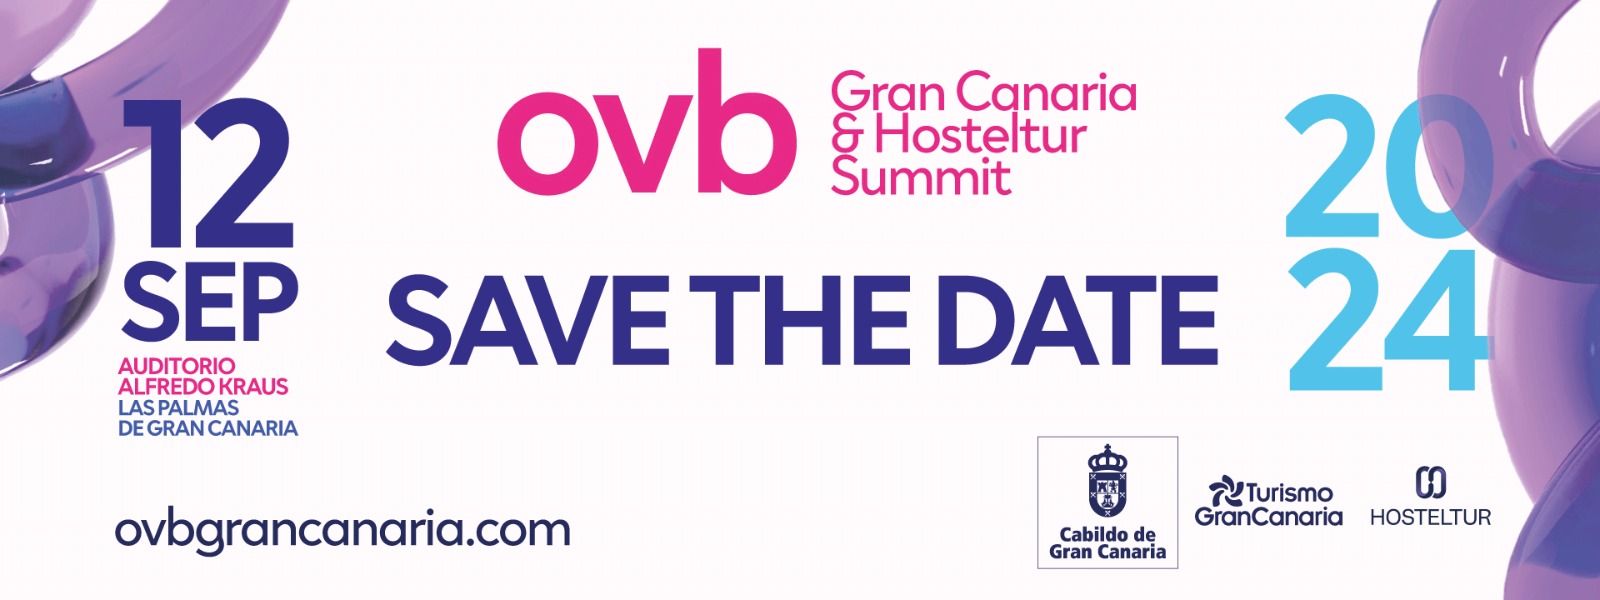 El 12 de septiembre vuelve Overbooking Gran Canaria & Hosteltur Summit